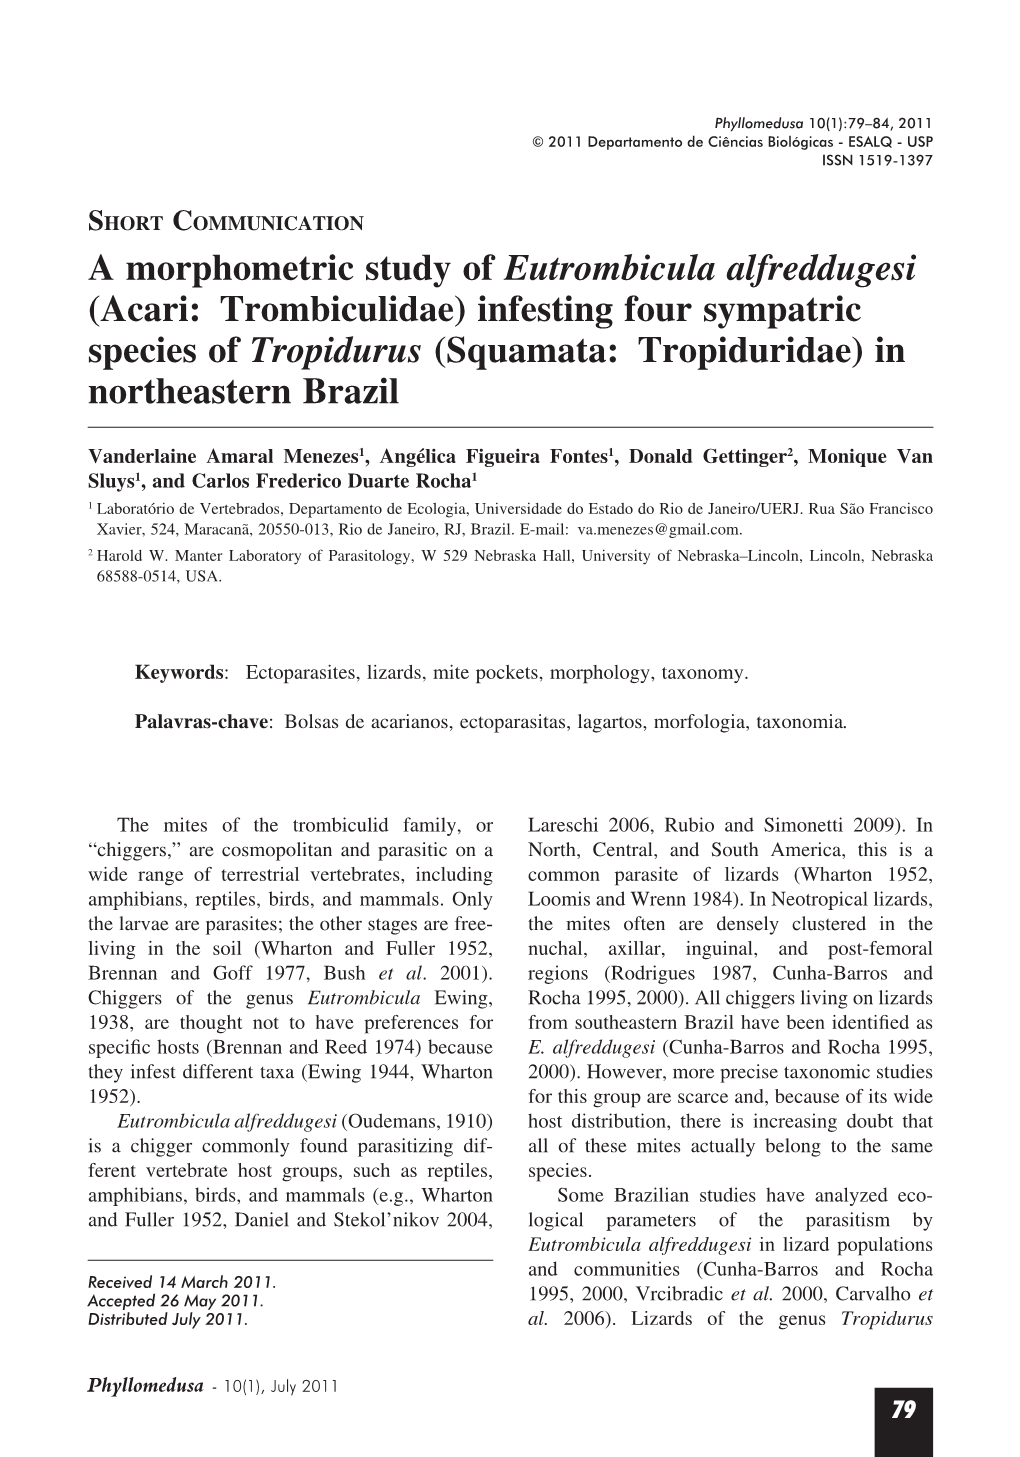 A Morphometric Study of Eutrombicula Alfreddugesi (Acari: Trombiculidae